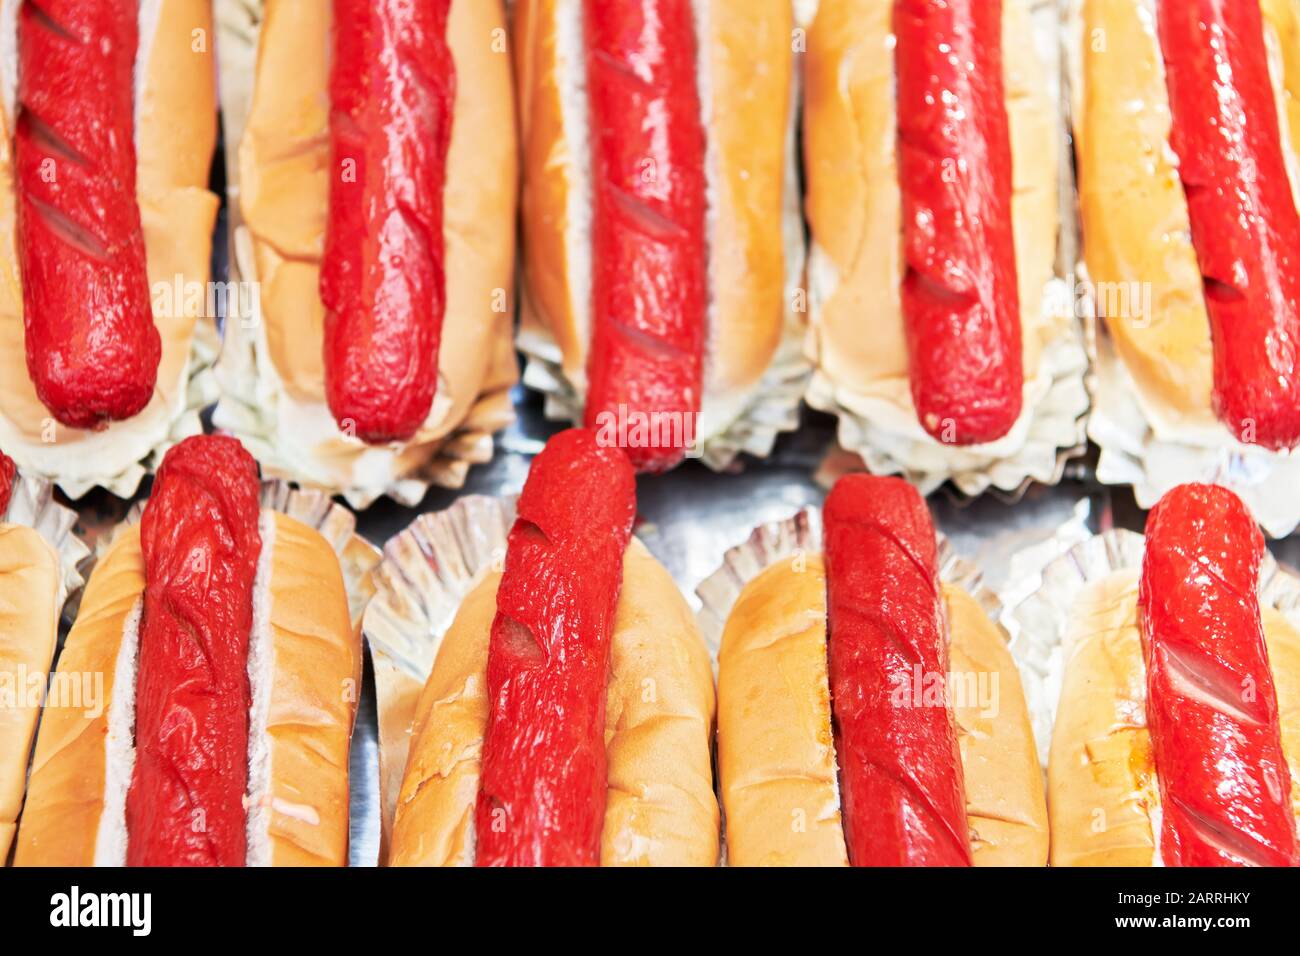 Molti cani caldi preparati avvolti in un pane dolce, pronto per la vendita a un stand alimentare durante un fiesta.Tipica malsana cibo di strada a buon mercato nelle Filippine Foto Stock